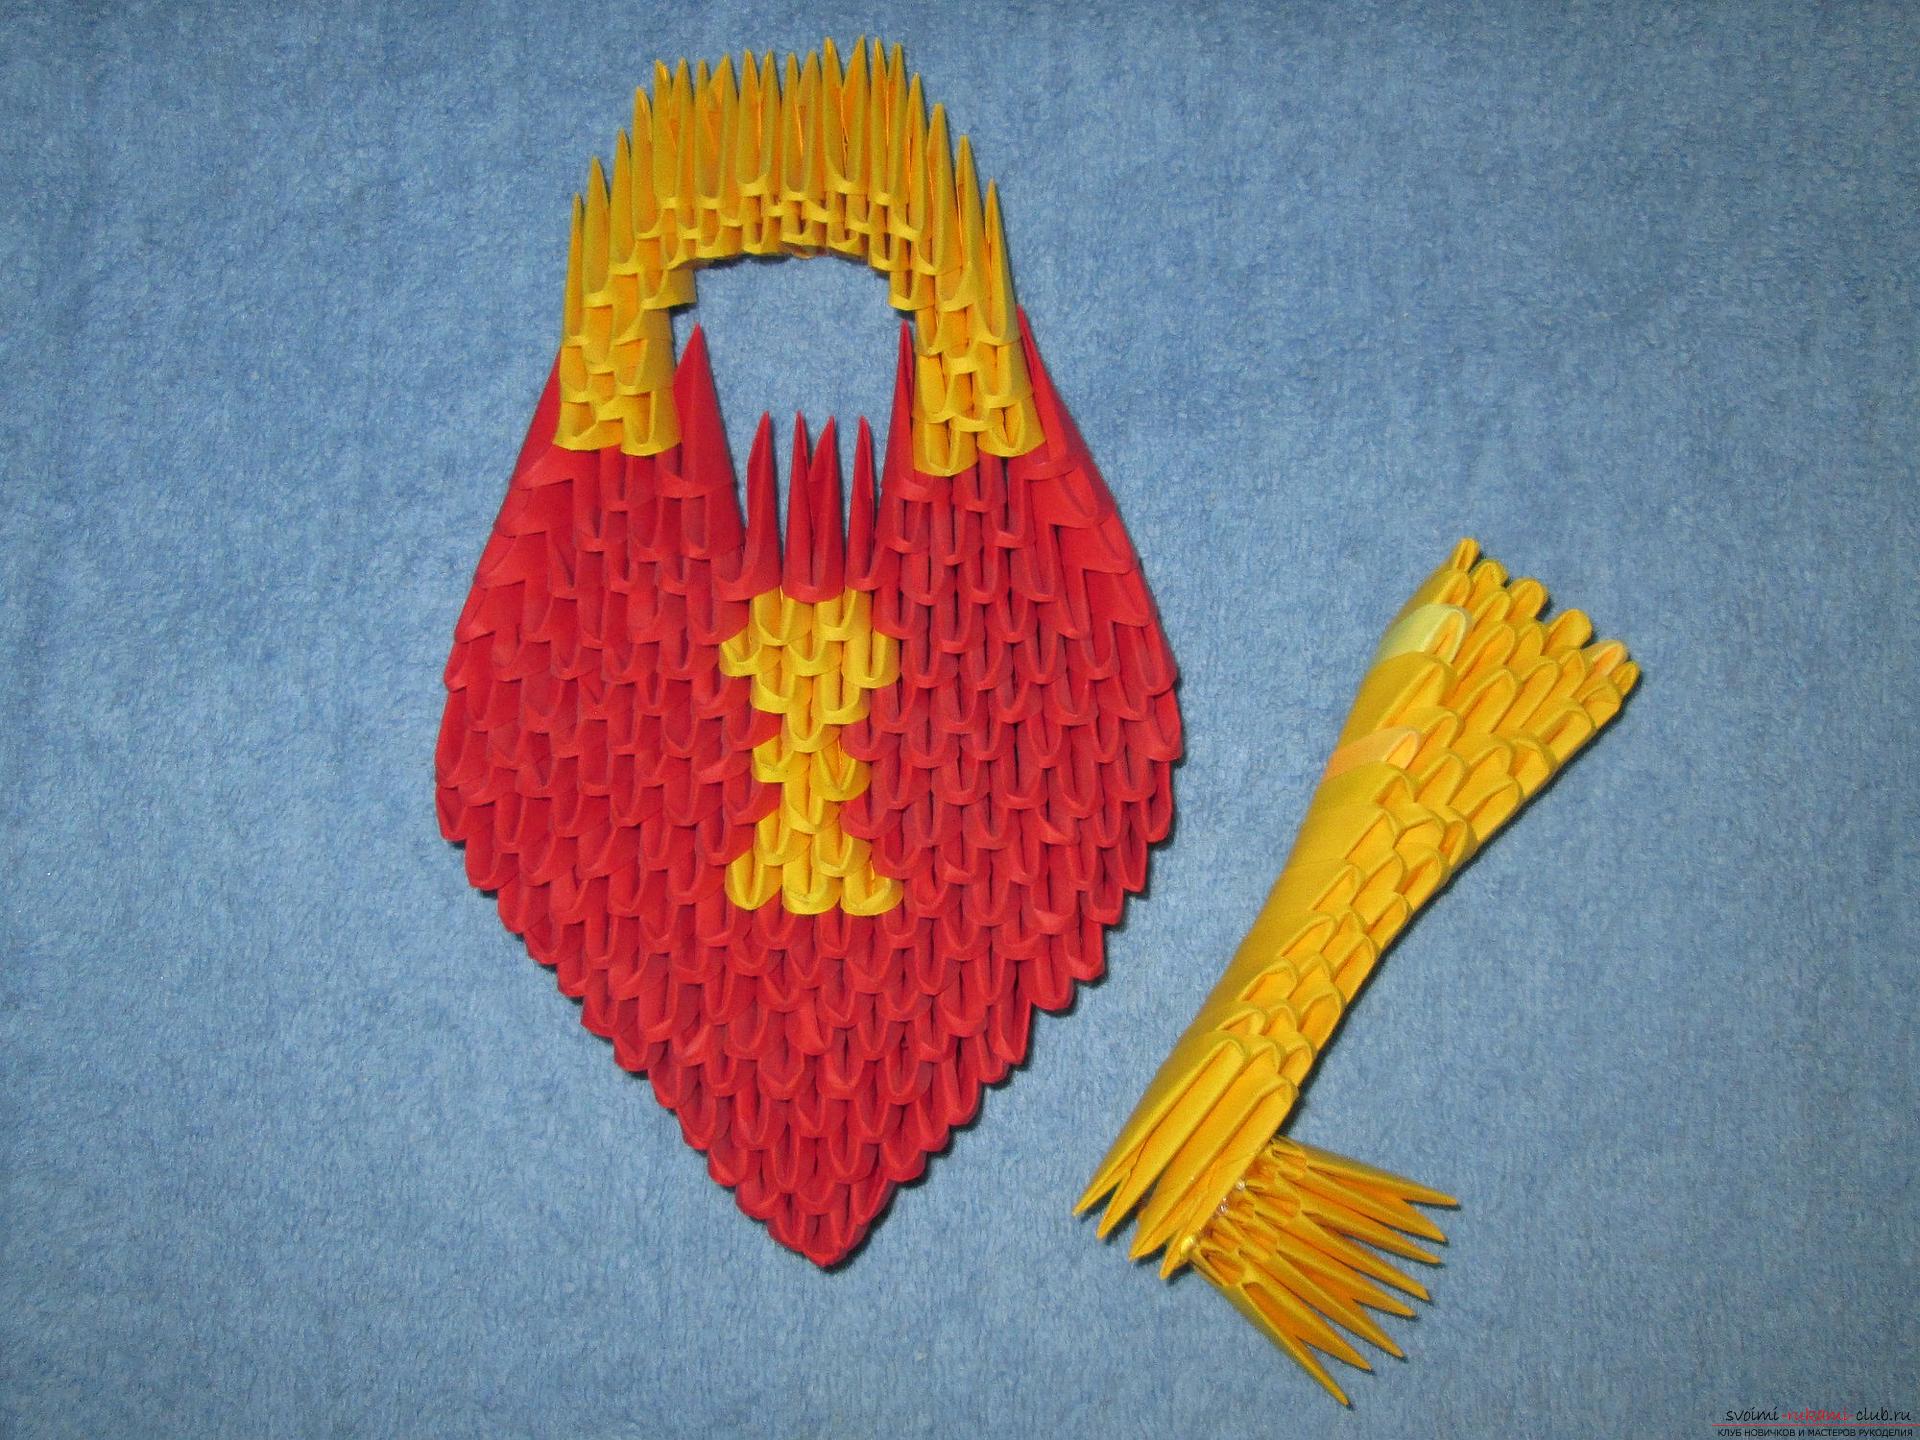 Мастер-класс подарков своими руками – модульного оригами сердечко – очень актуален накануне Дня влюбленных.. Фото №1